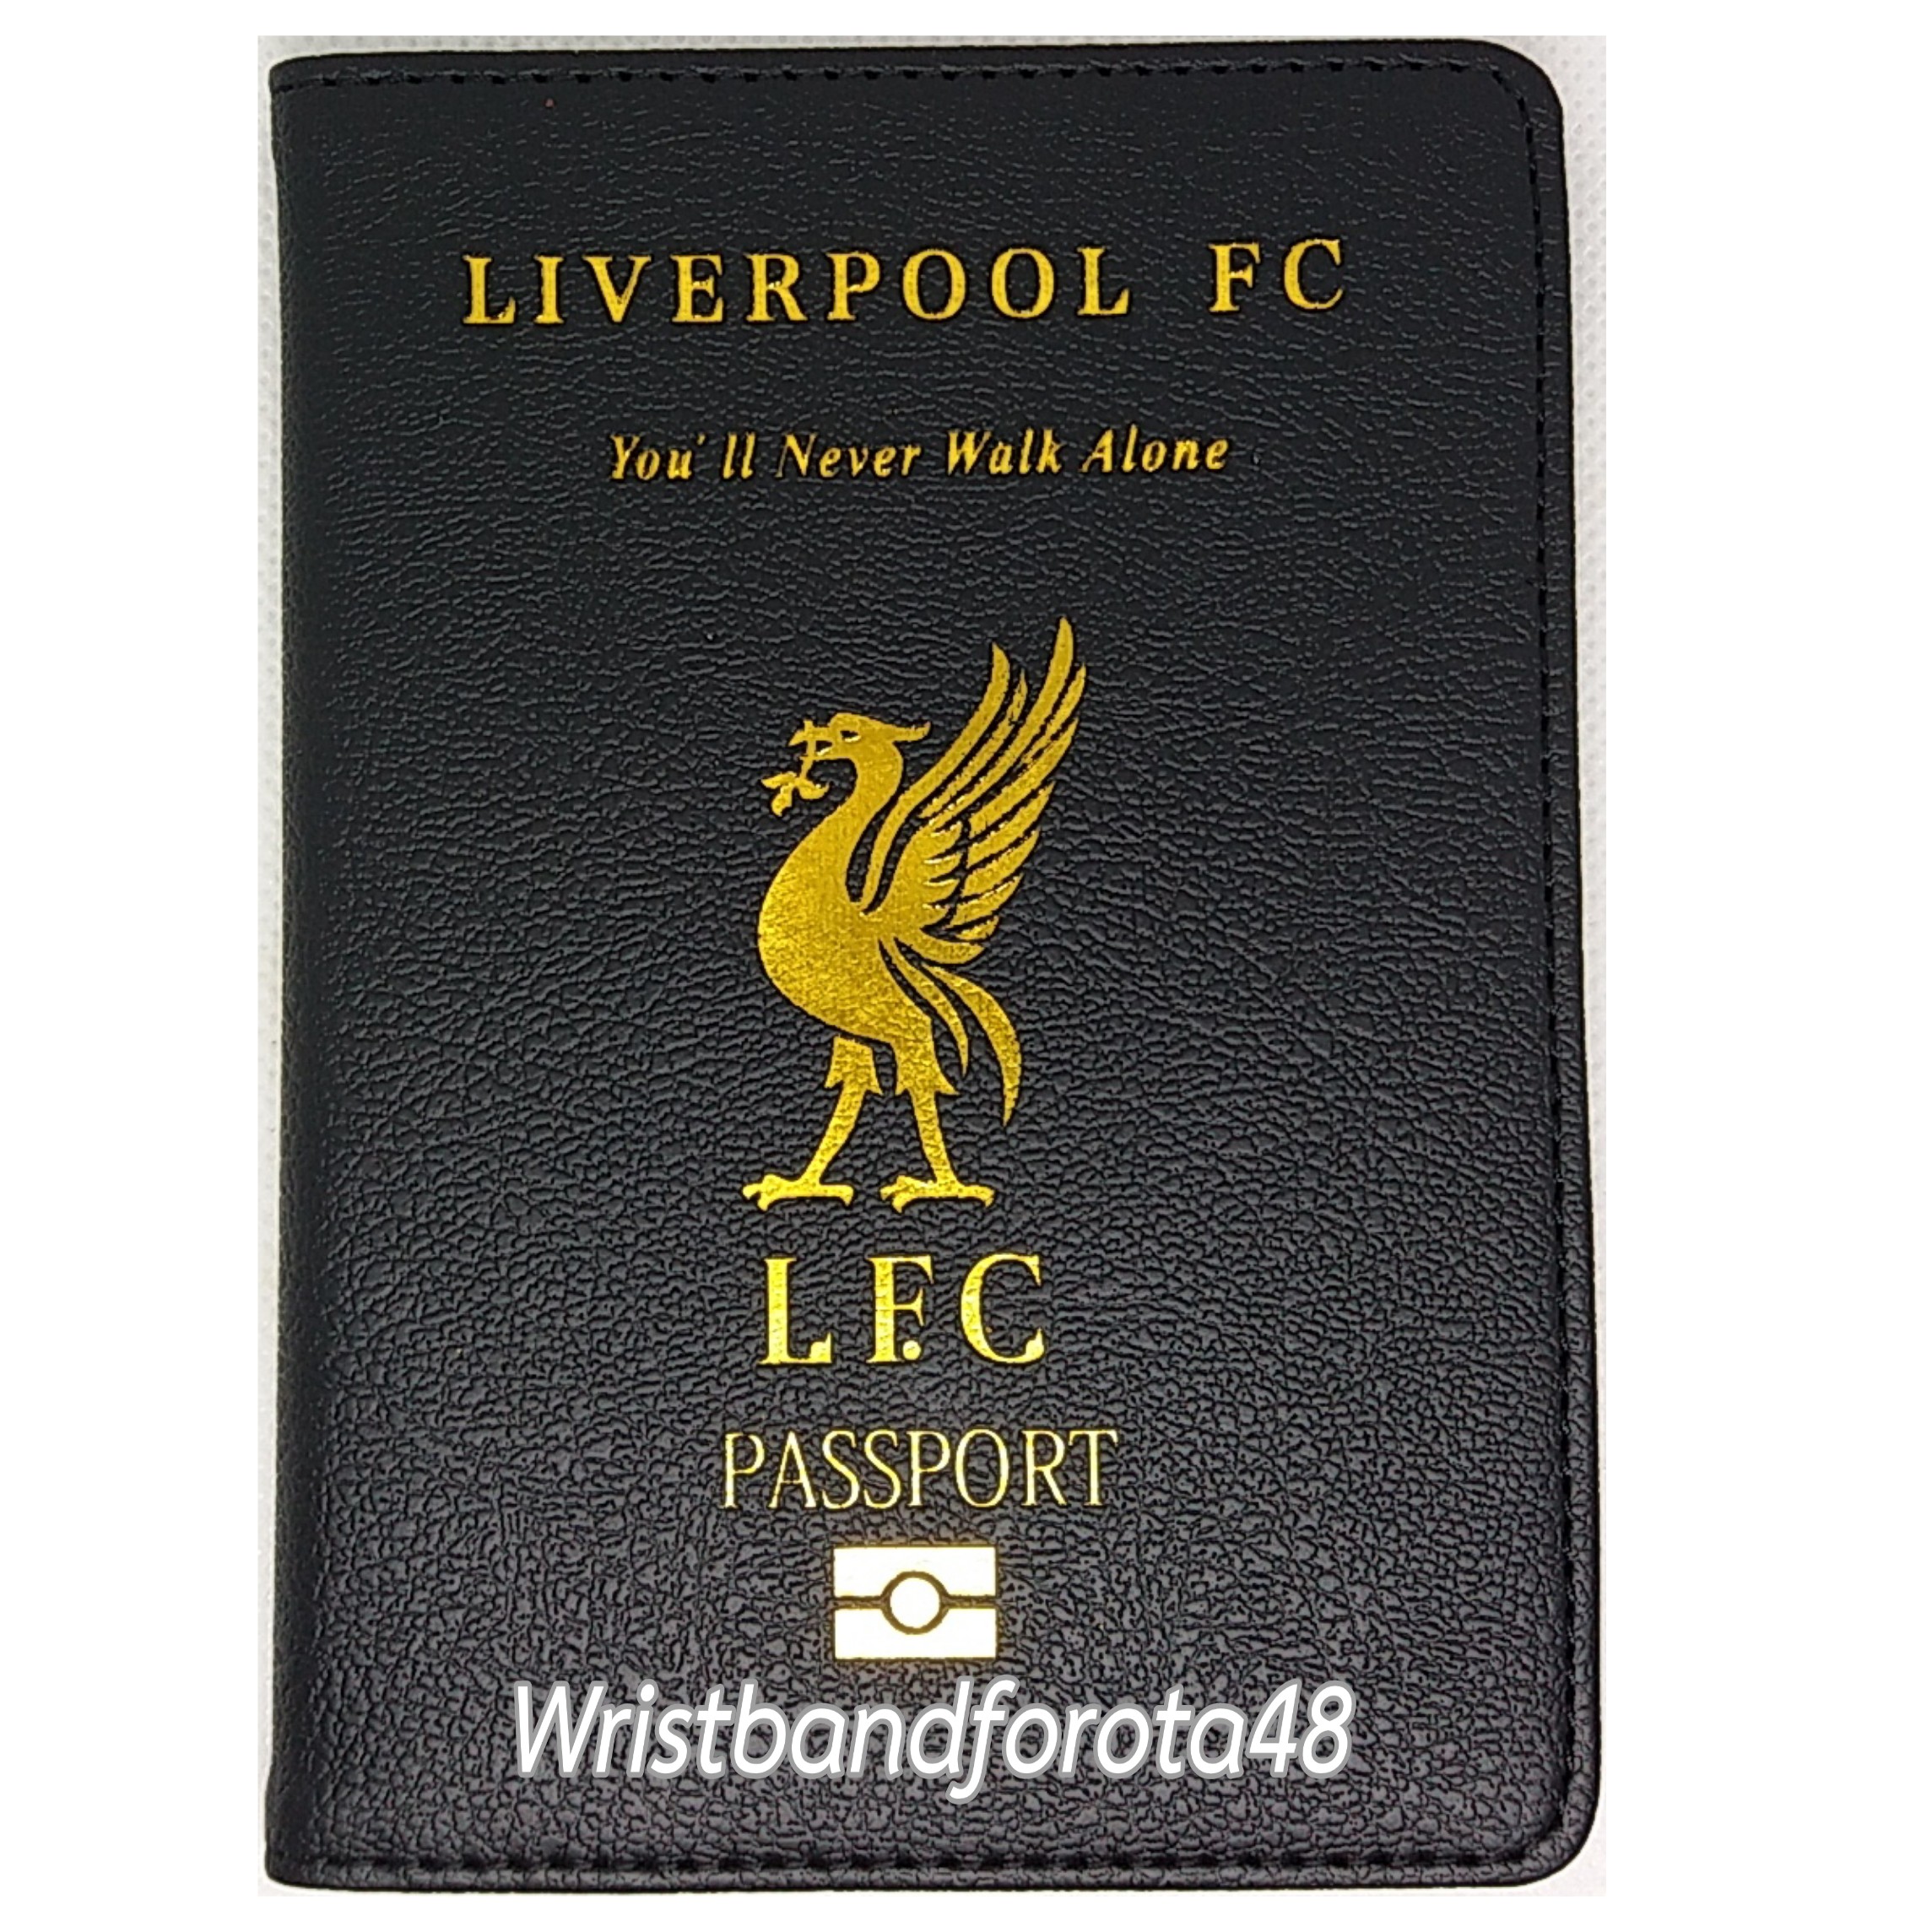 ปกพาสปอร์ต Liverpool FC cover passport